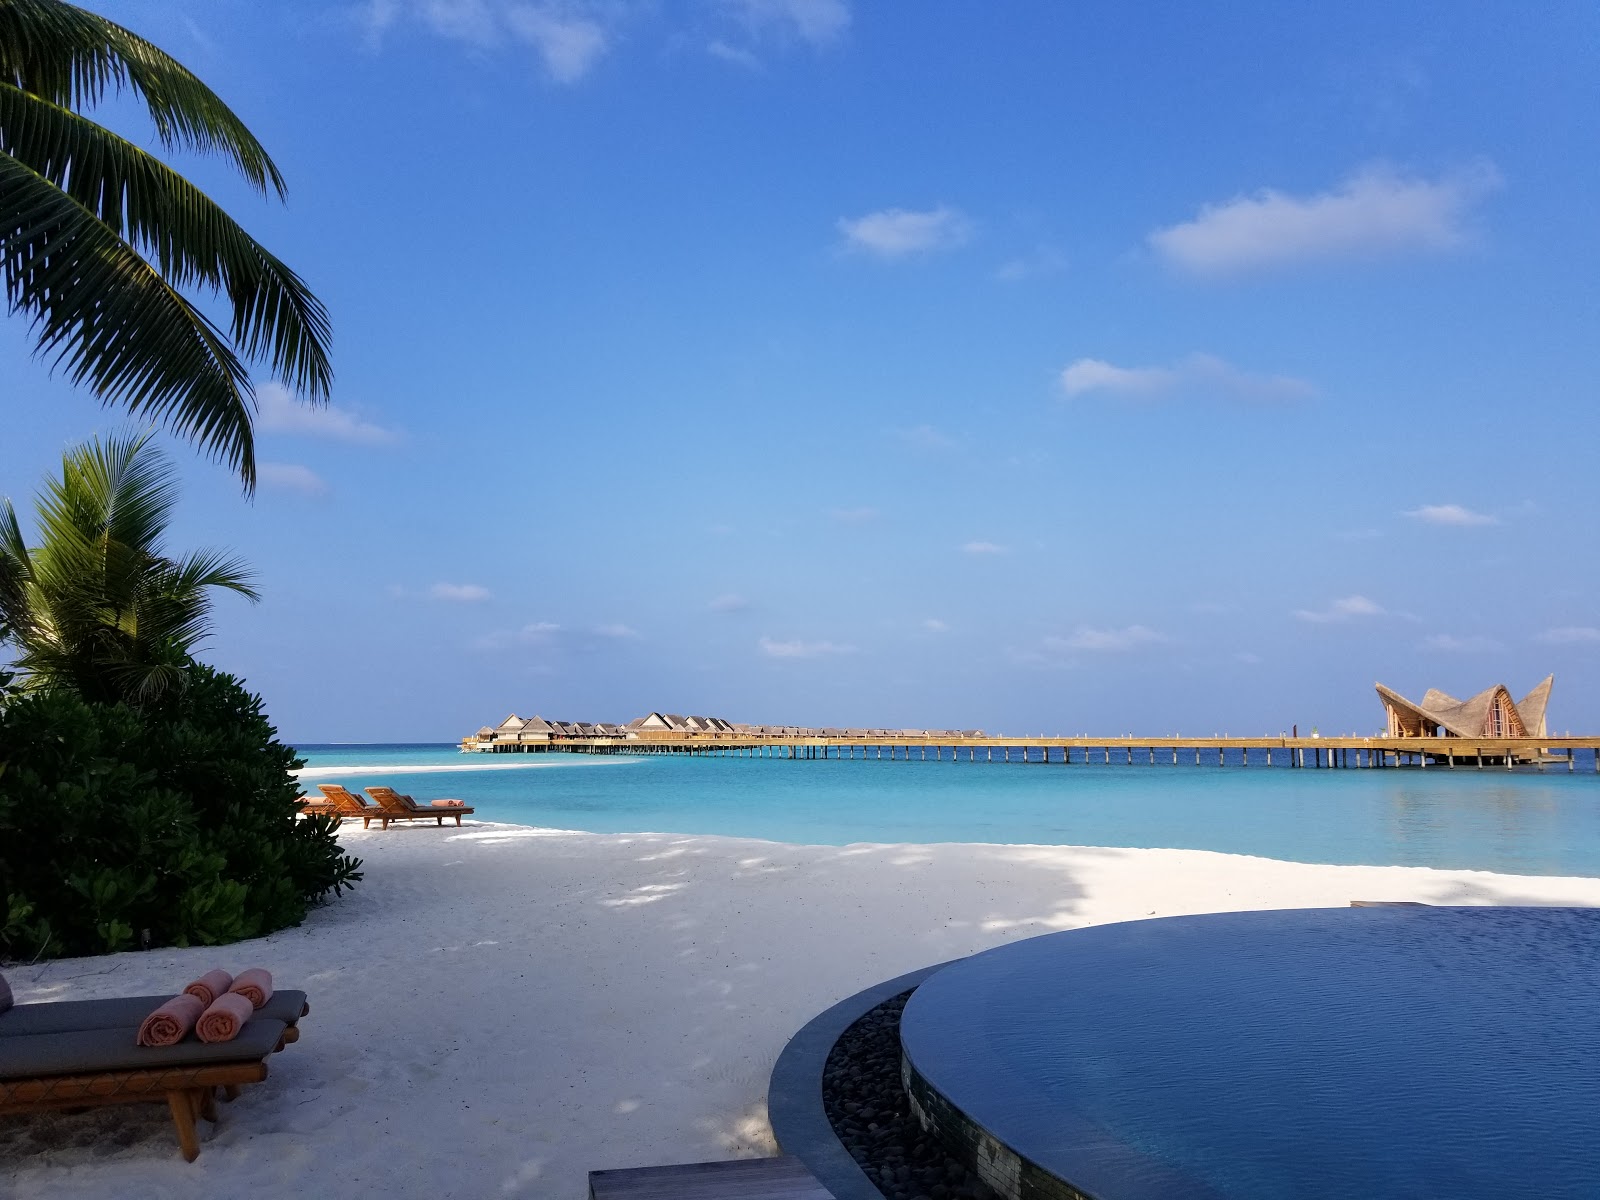 Foto af Joali Maldives - populært sted blandt afslapningskendere